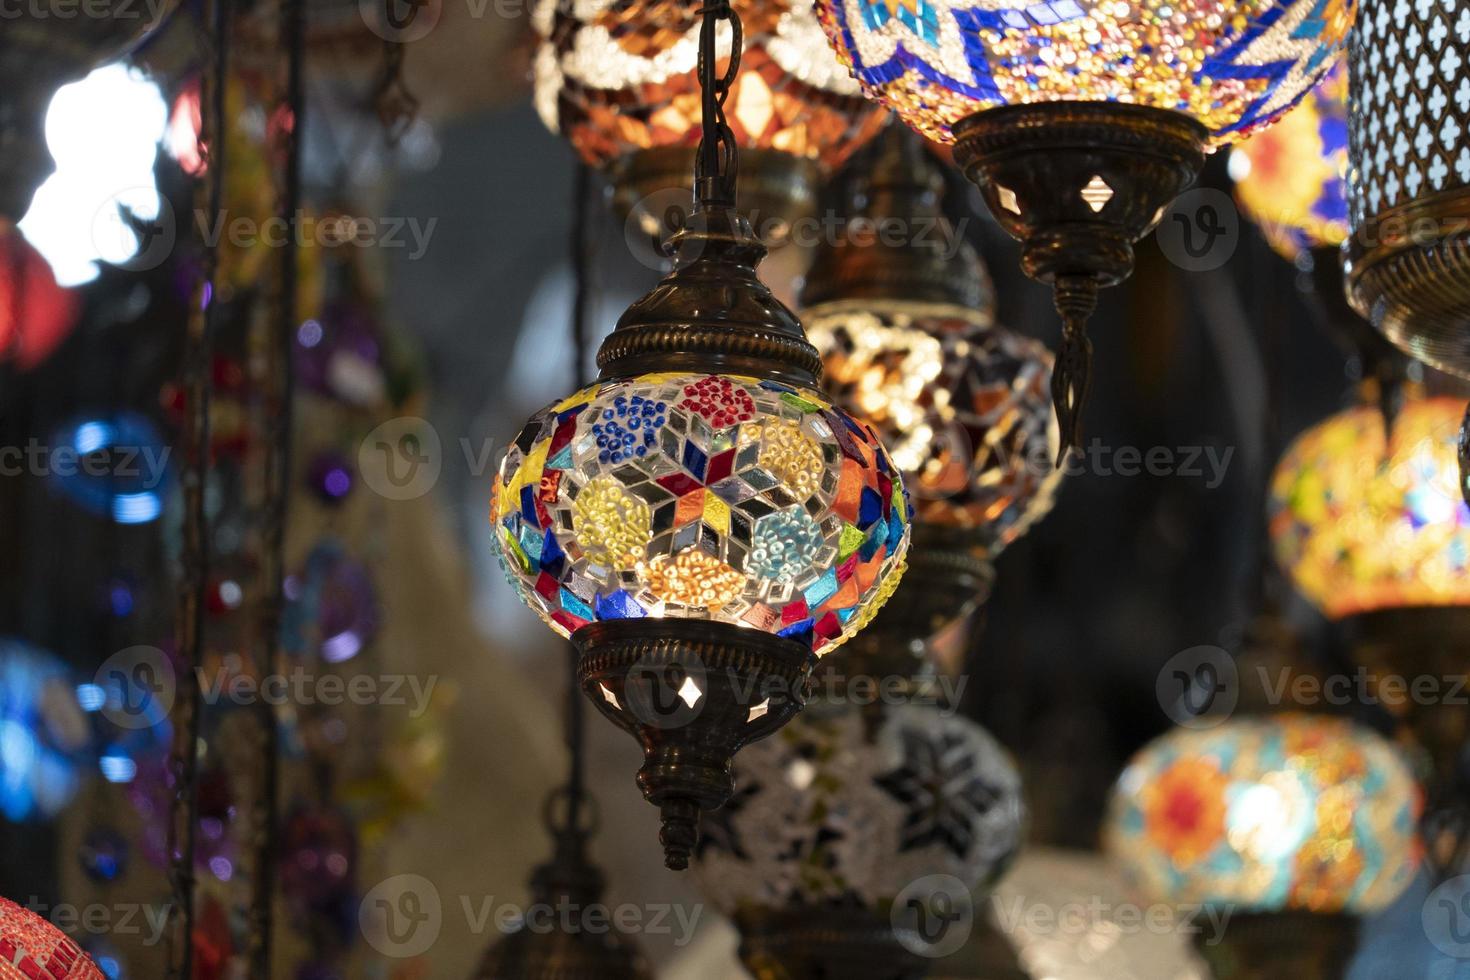 linterna de lámpara de colores de vidrio árabe foto